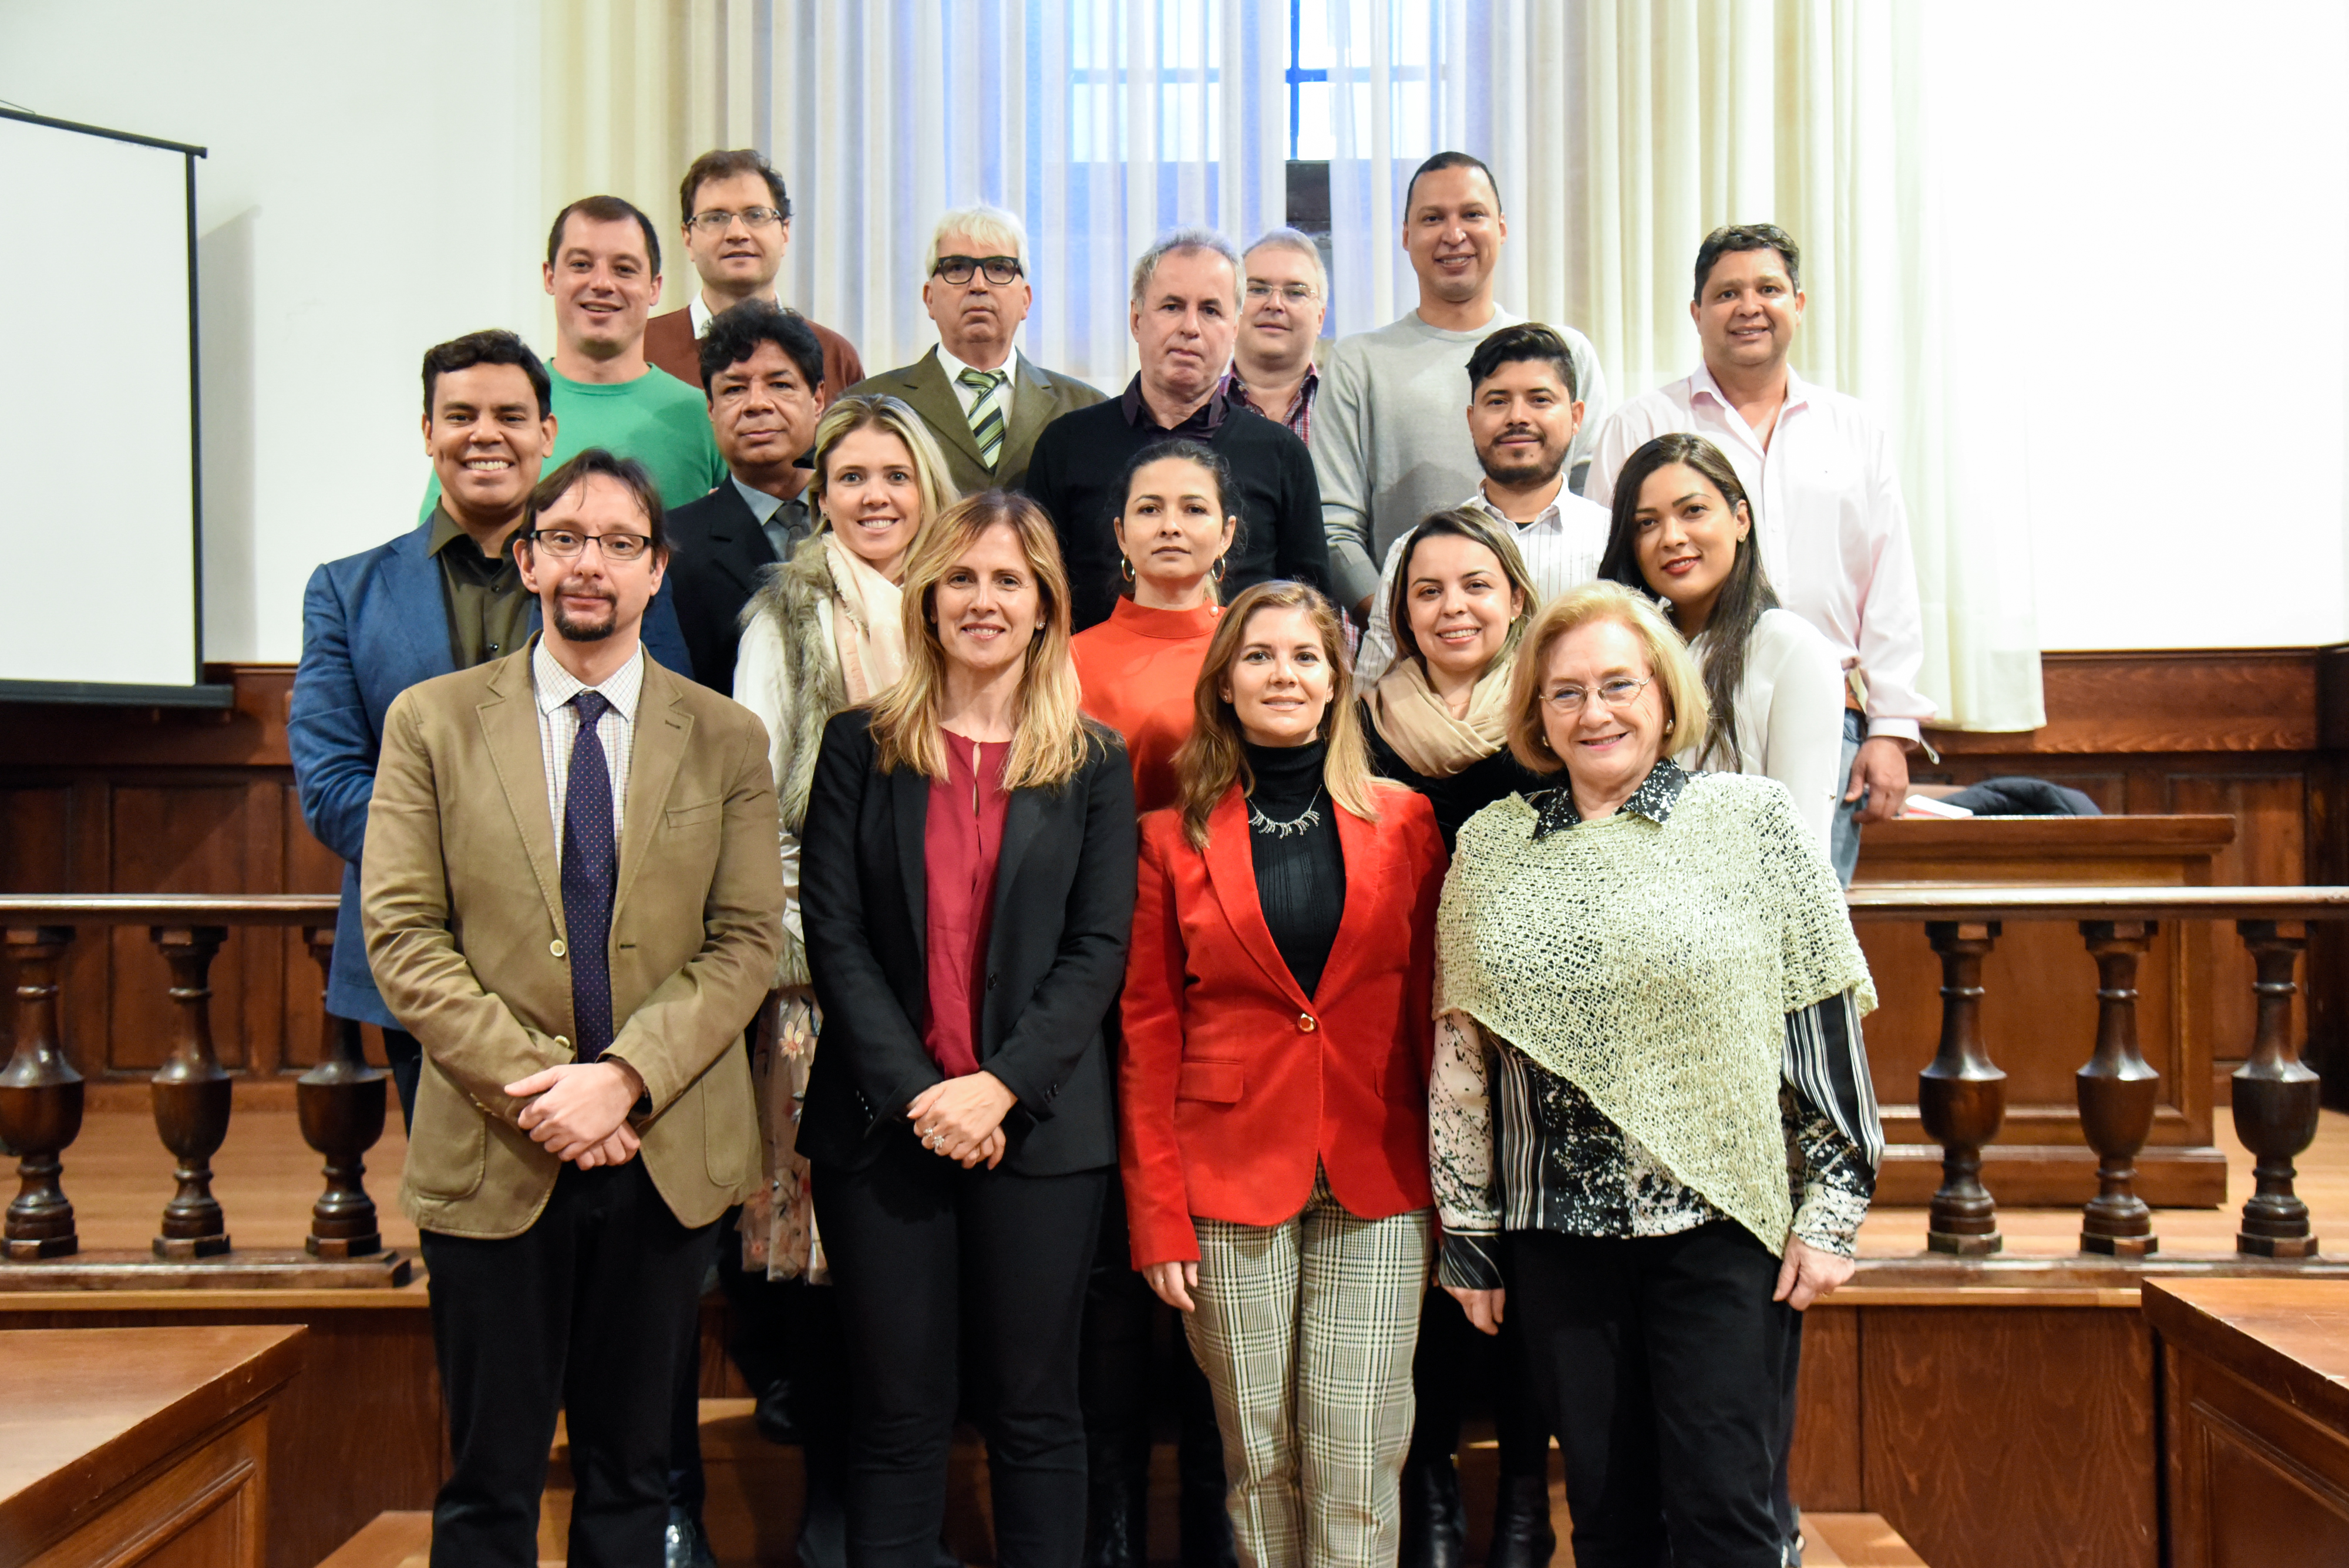 La Universidad de Salamanca forma a profesionales españoles y latinoamericanos a través de dos cursos de postgrado específicos en Derecho